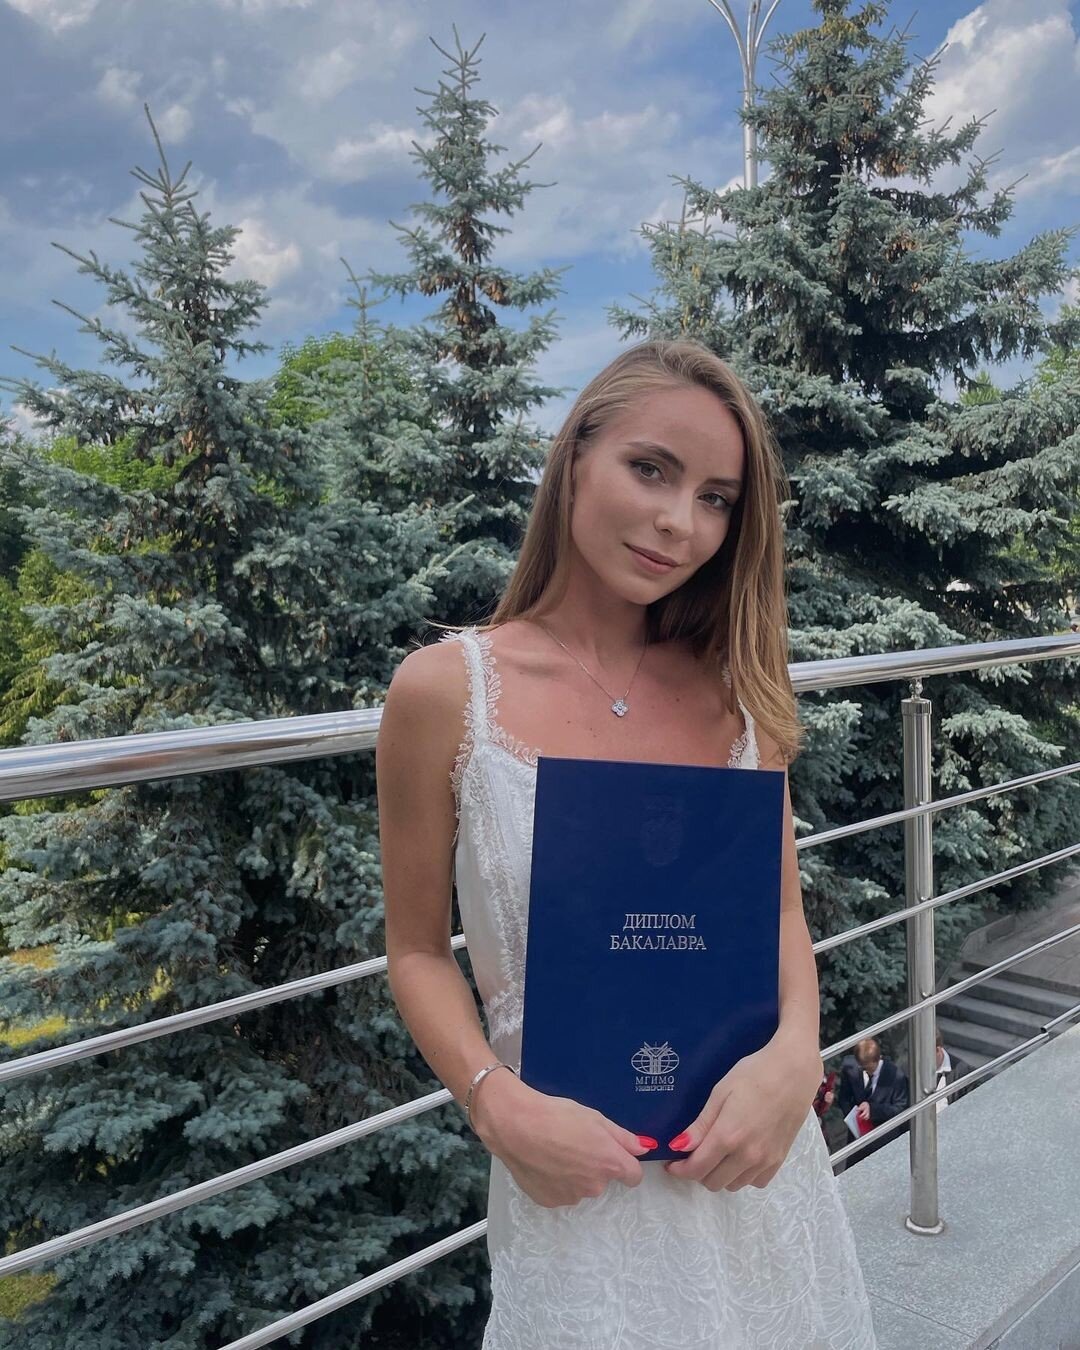 Дочь Татьяны Навки в скромном наряде пришла за дипломом МГИМО